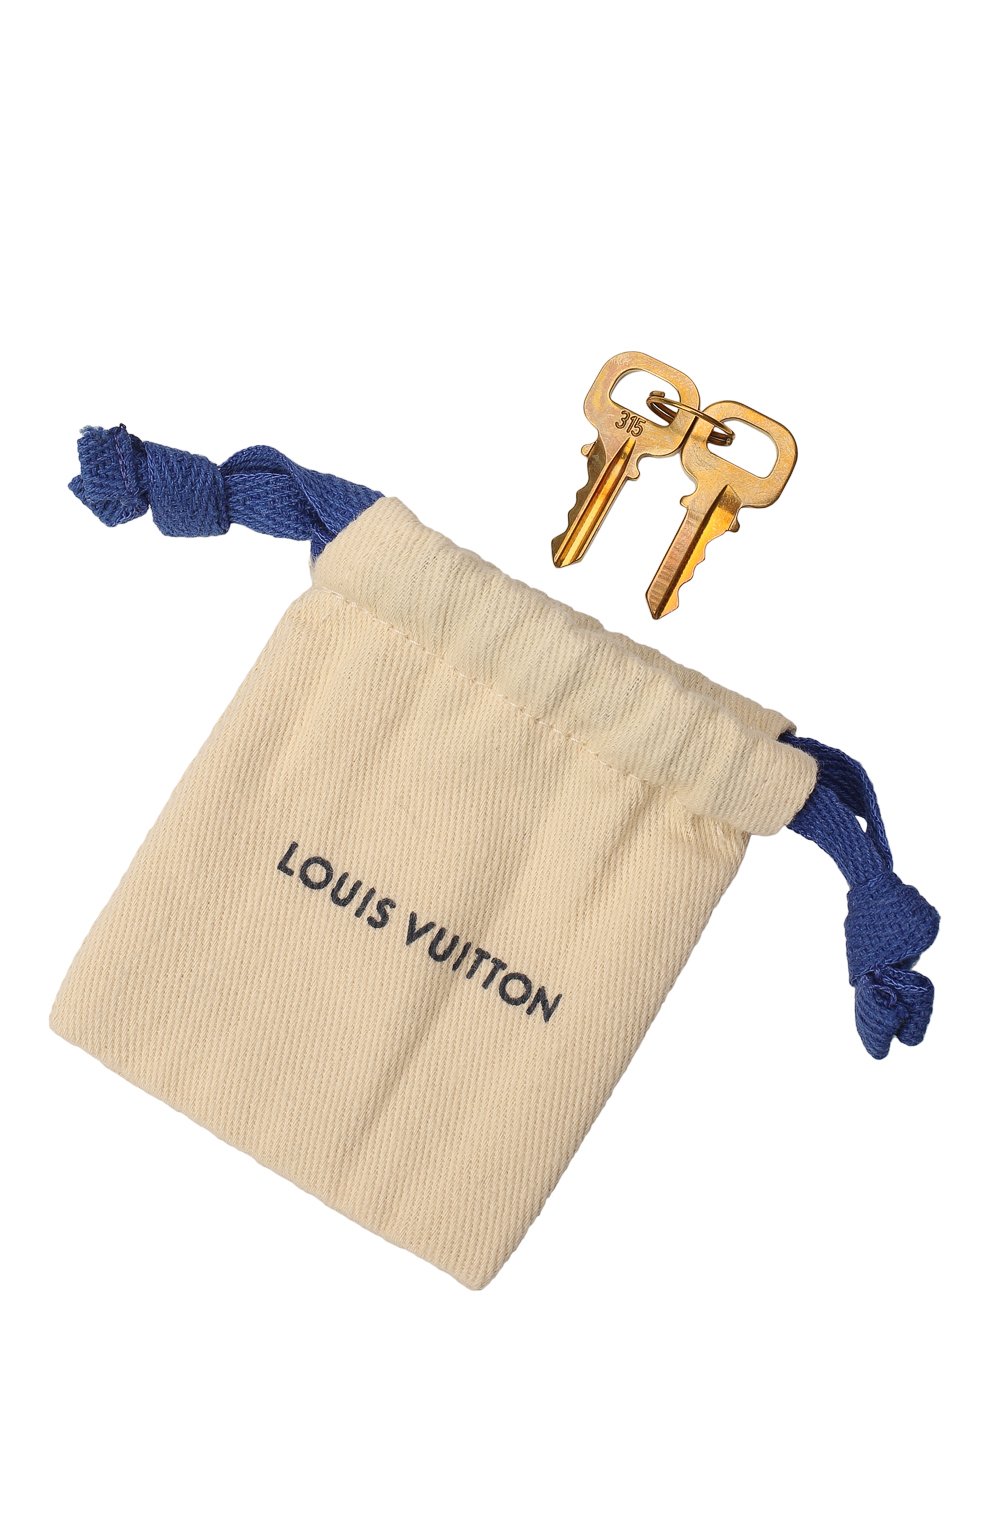 Дорожная сумка Keepall 55 | Louis Vuitton | Коричневый - 9